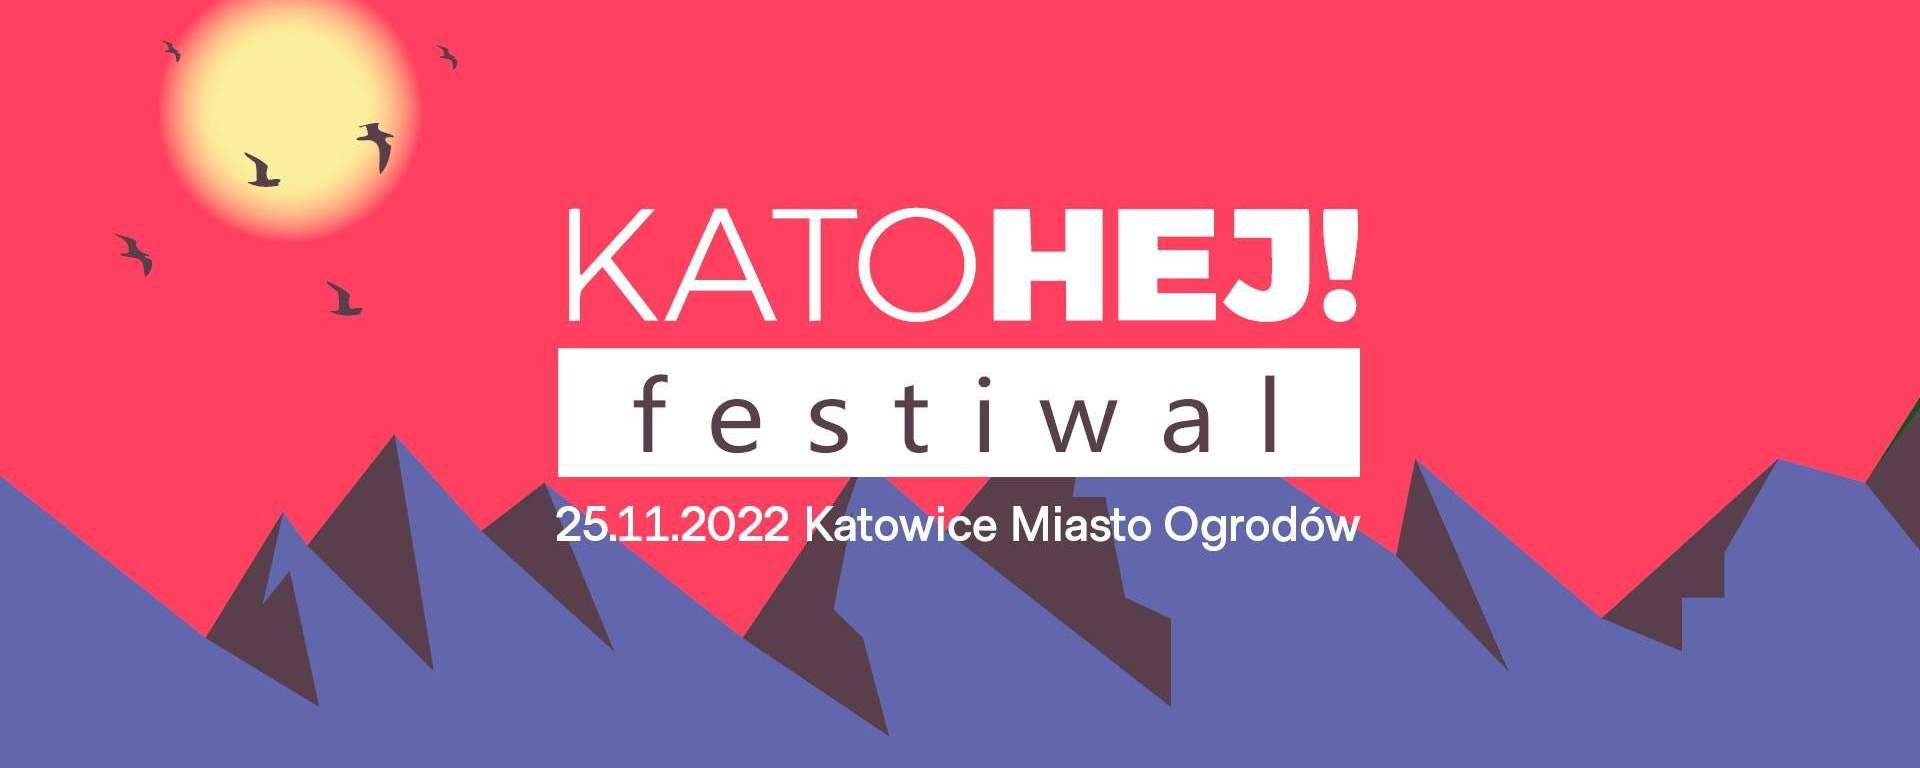 KatoHej! Festiwal 2022